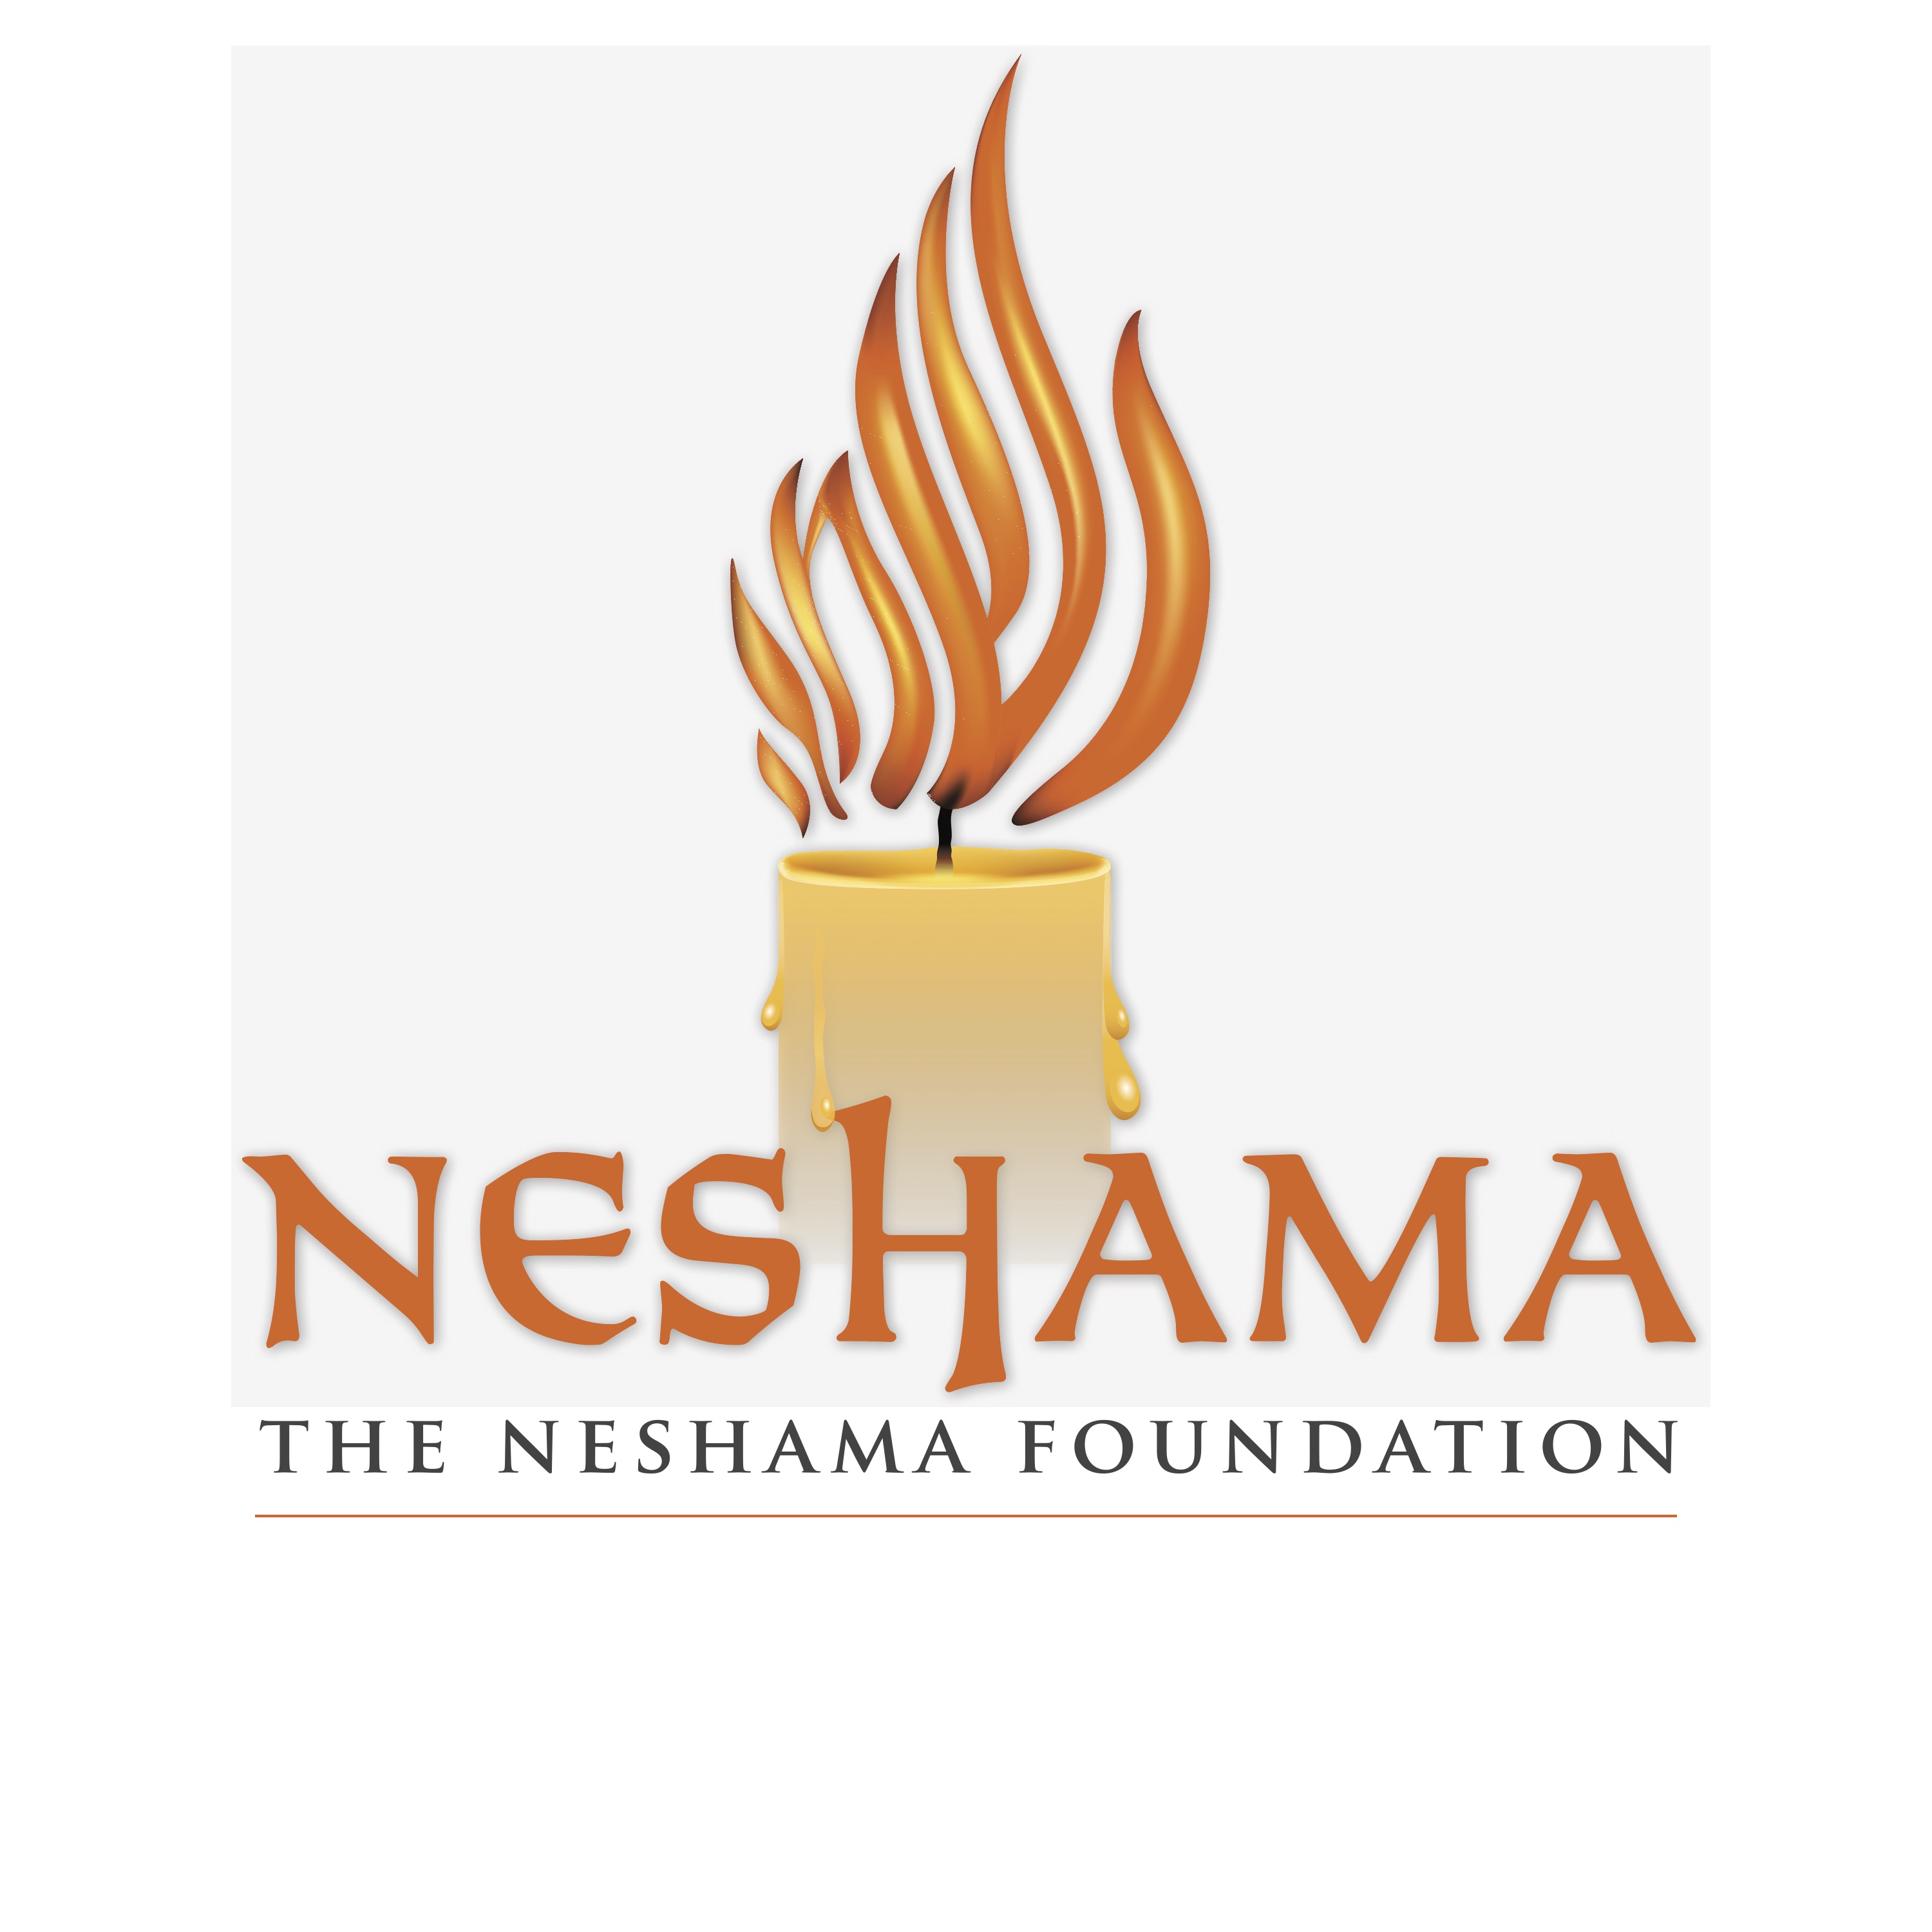 The Neshama Foundation logo